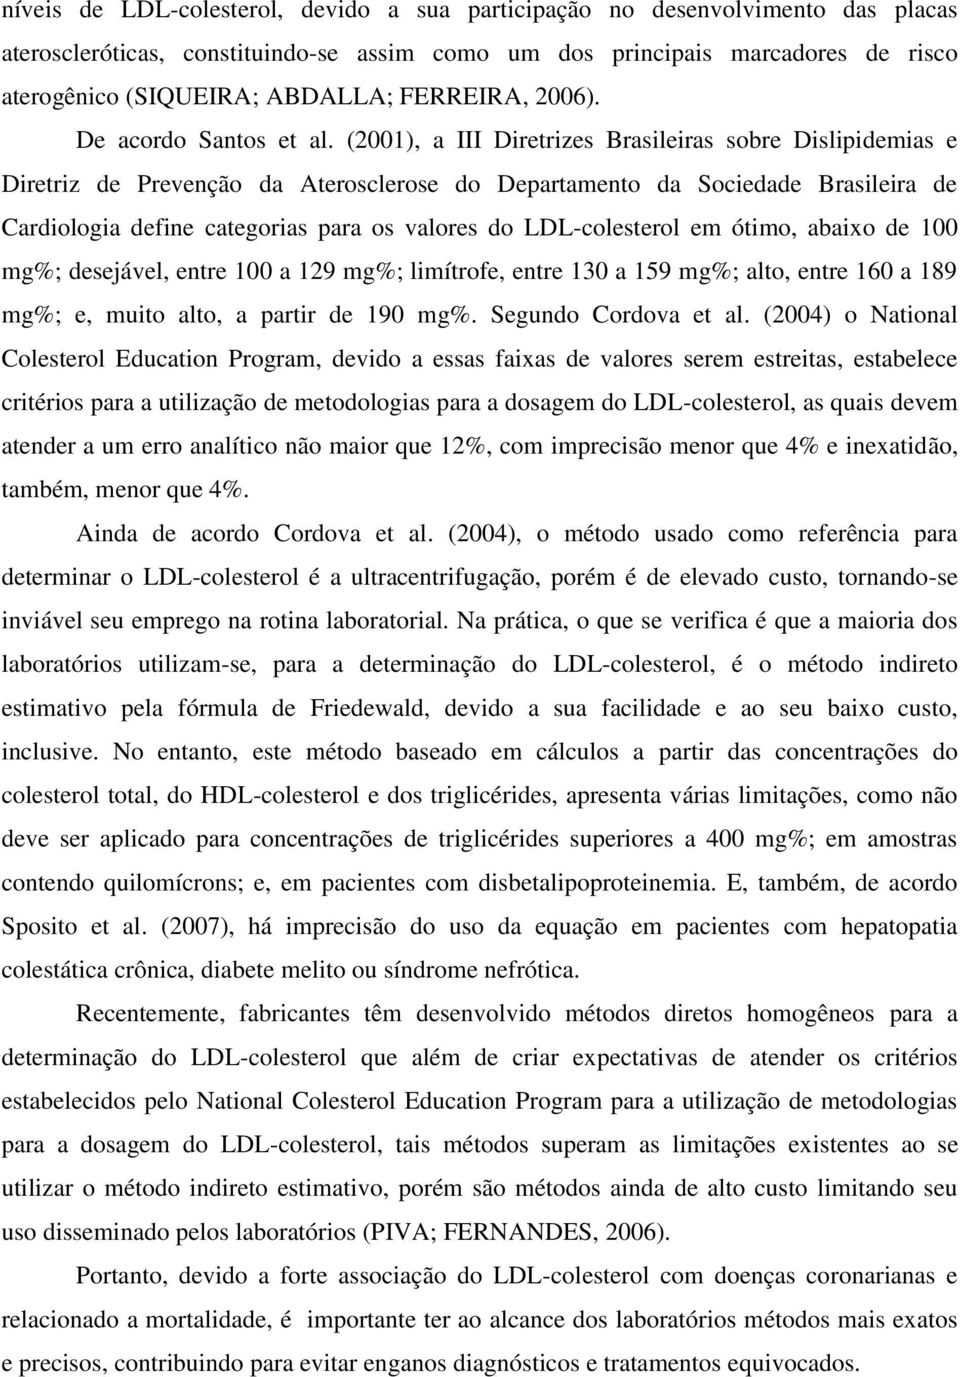 (2001), a III Diretrizes Brasileiras sobre Dislipidemias e Diretriz de Prevenção da Aterosclerose do Departamento da Sociedade Brasileira de Cardiologia define categorias para os valores do